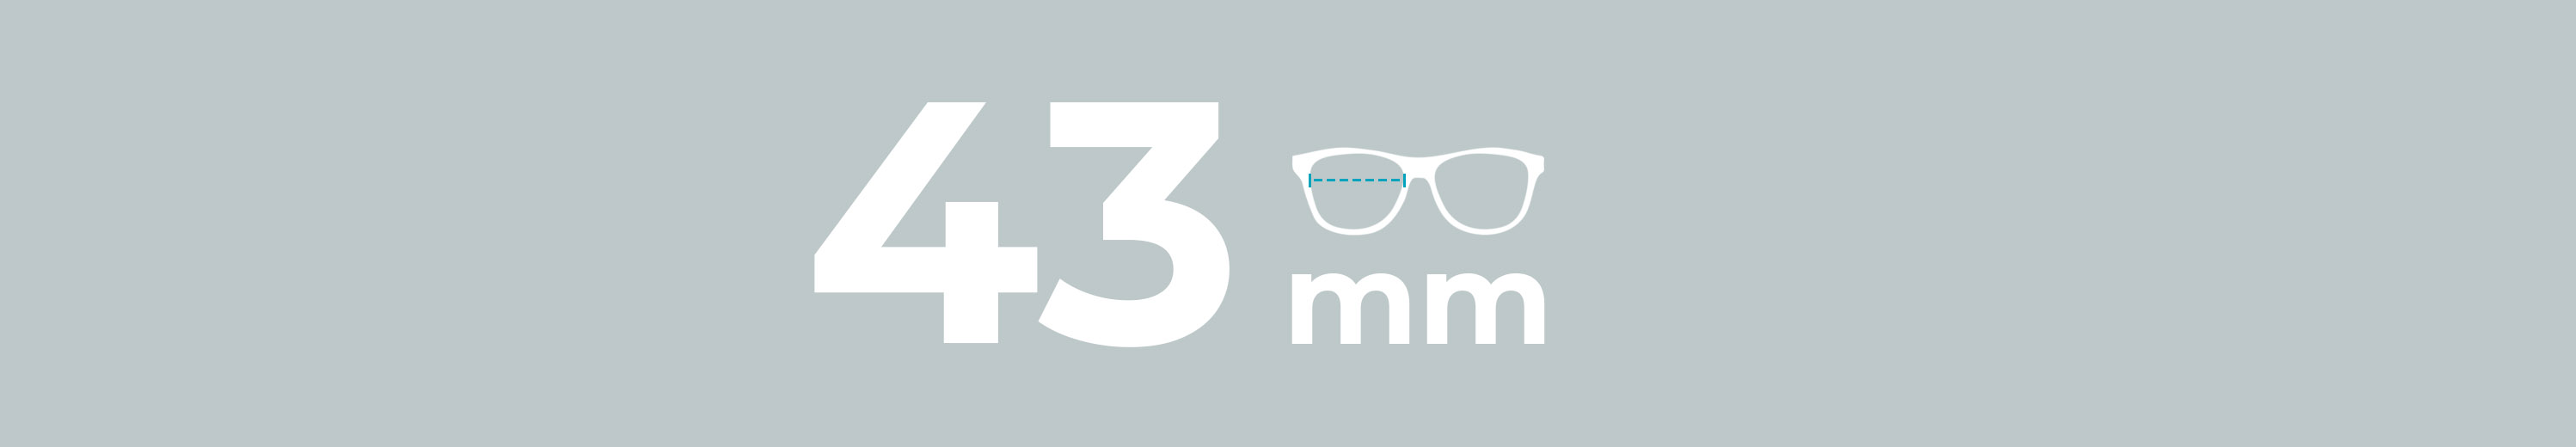 Eyeglasses 43mm Lens